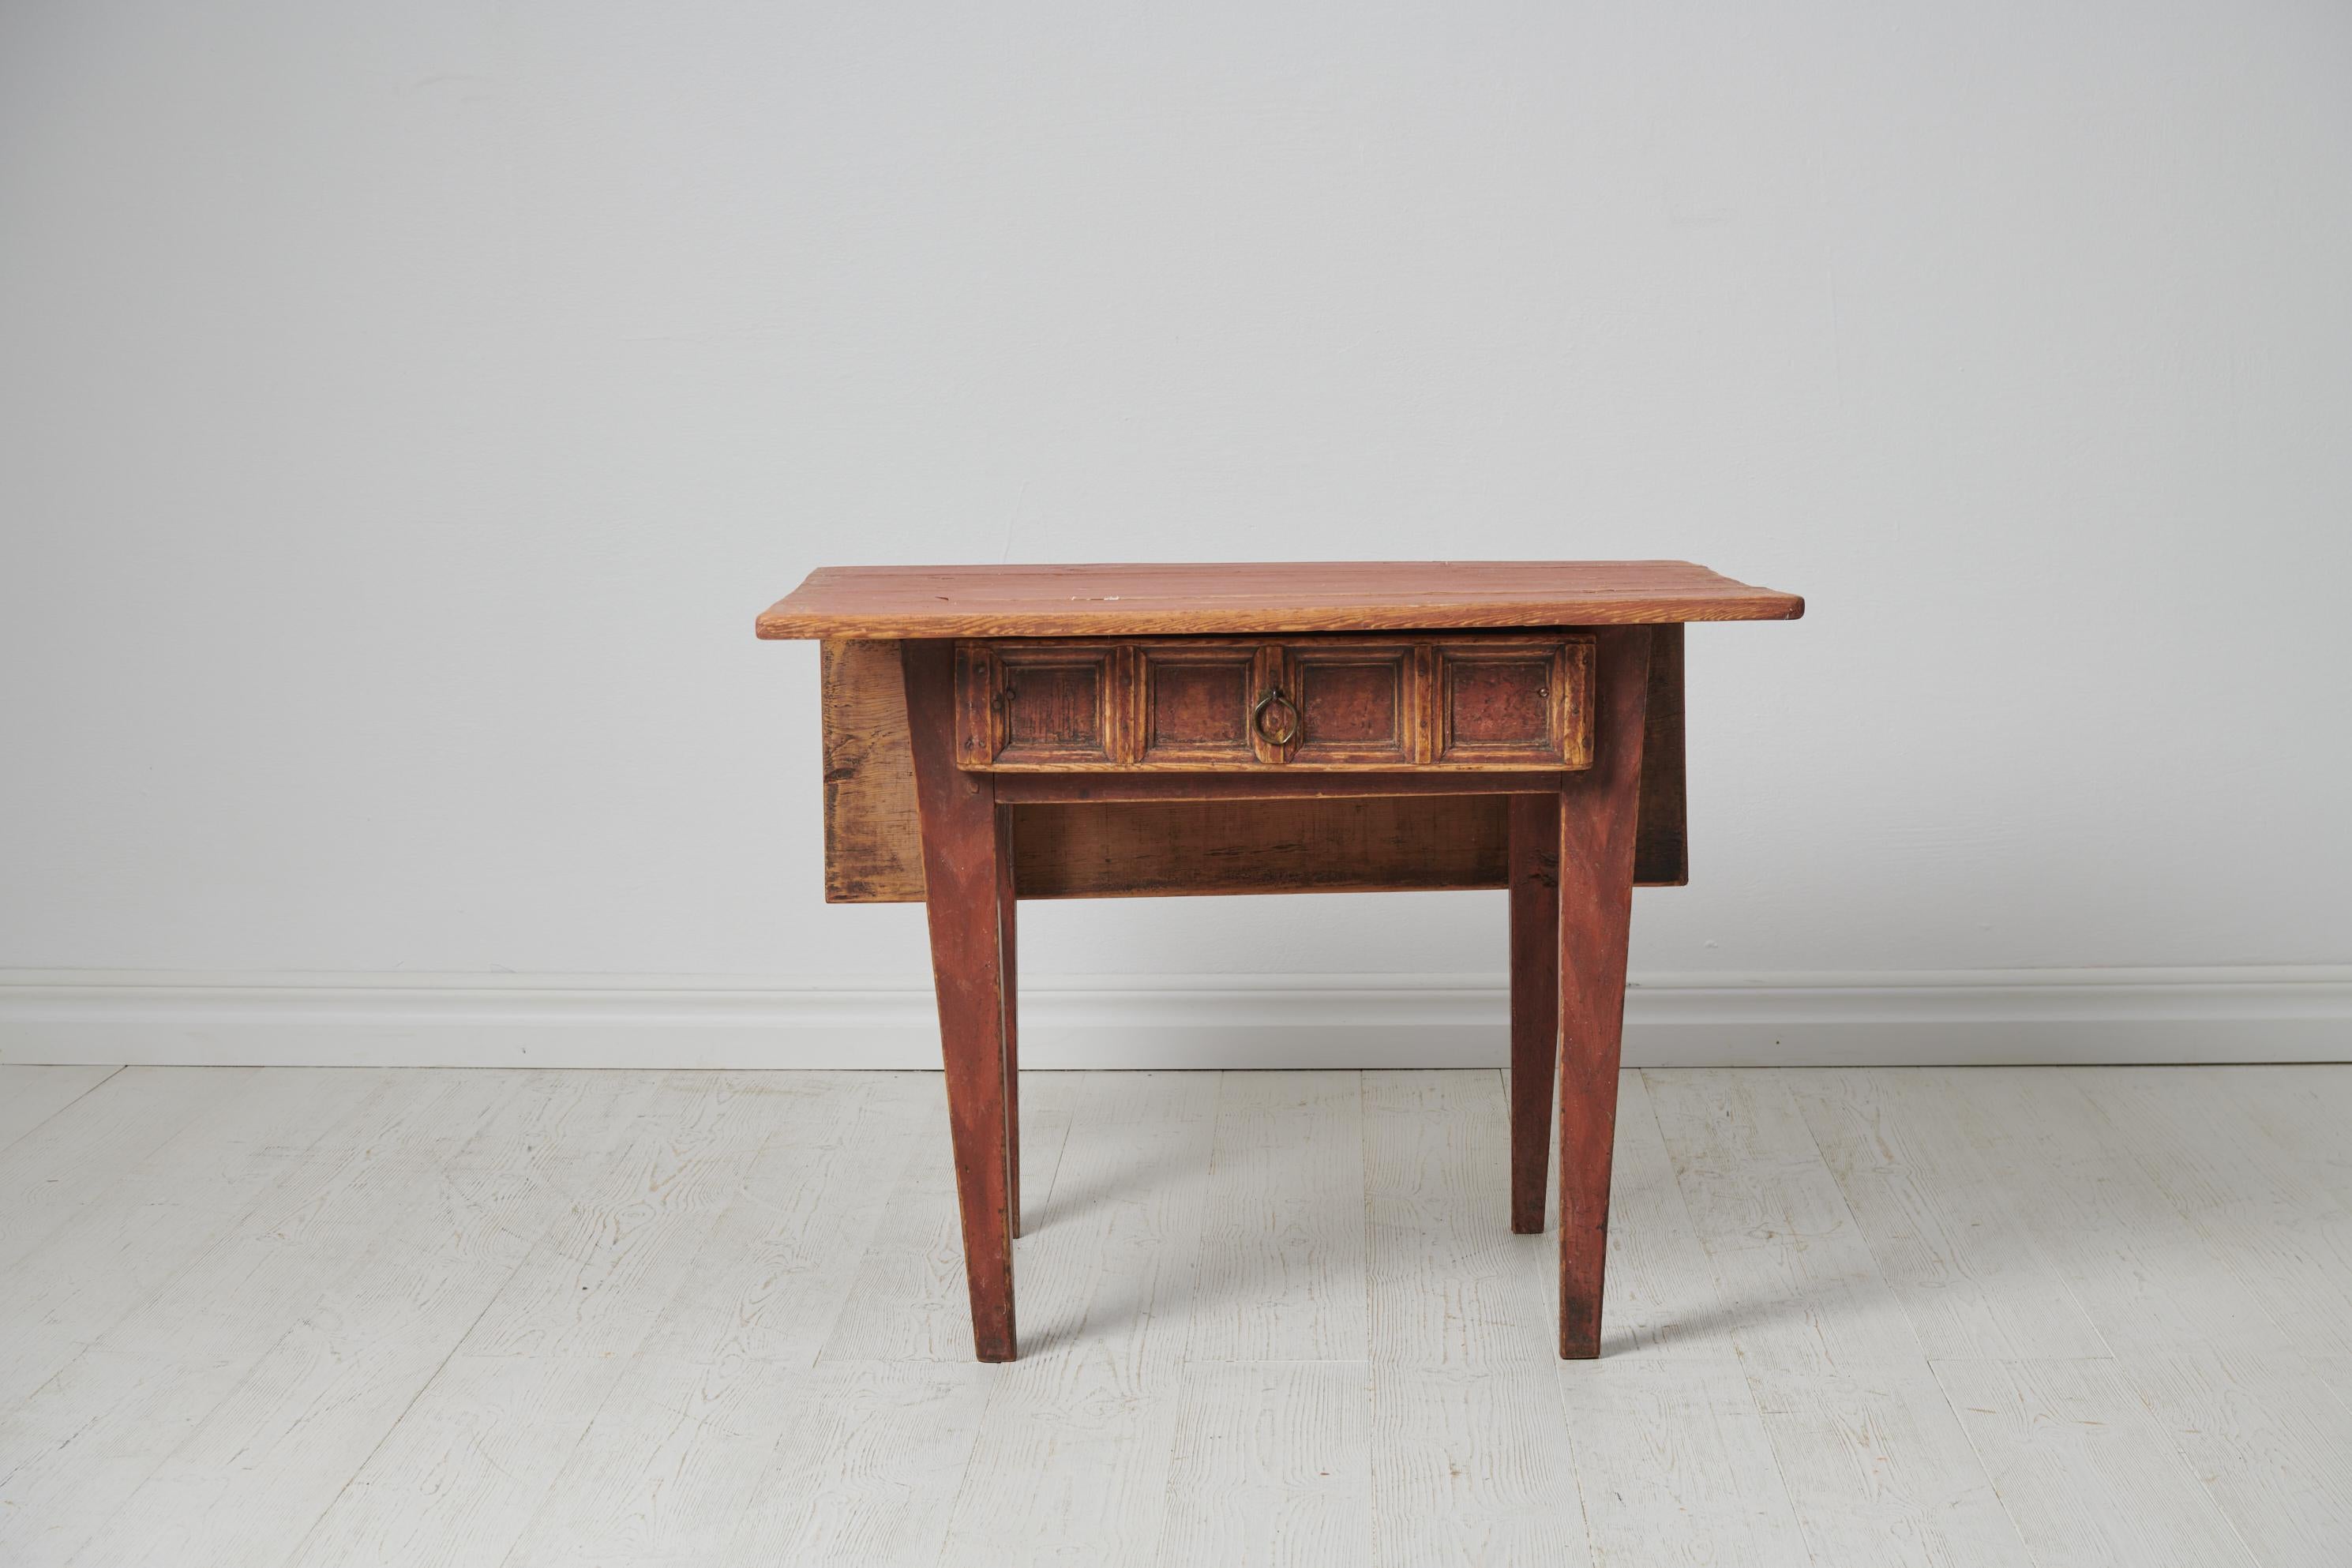 Petite table de campagne charmante du nord de la Suède. La table est un véritable meuble d'art populaire datant d'environ 1790 à 1810. Il est fabriqué à la main en pin massif. La table est dans un état intact avec la peinture d'origine qui a une